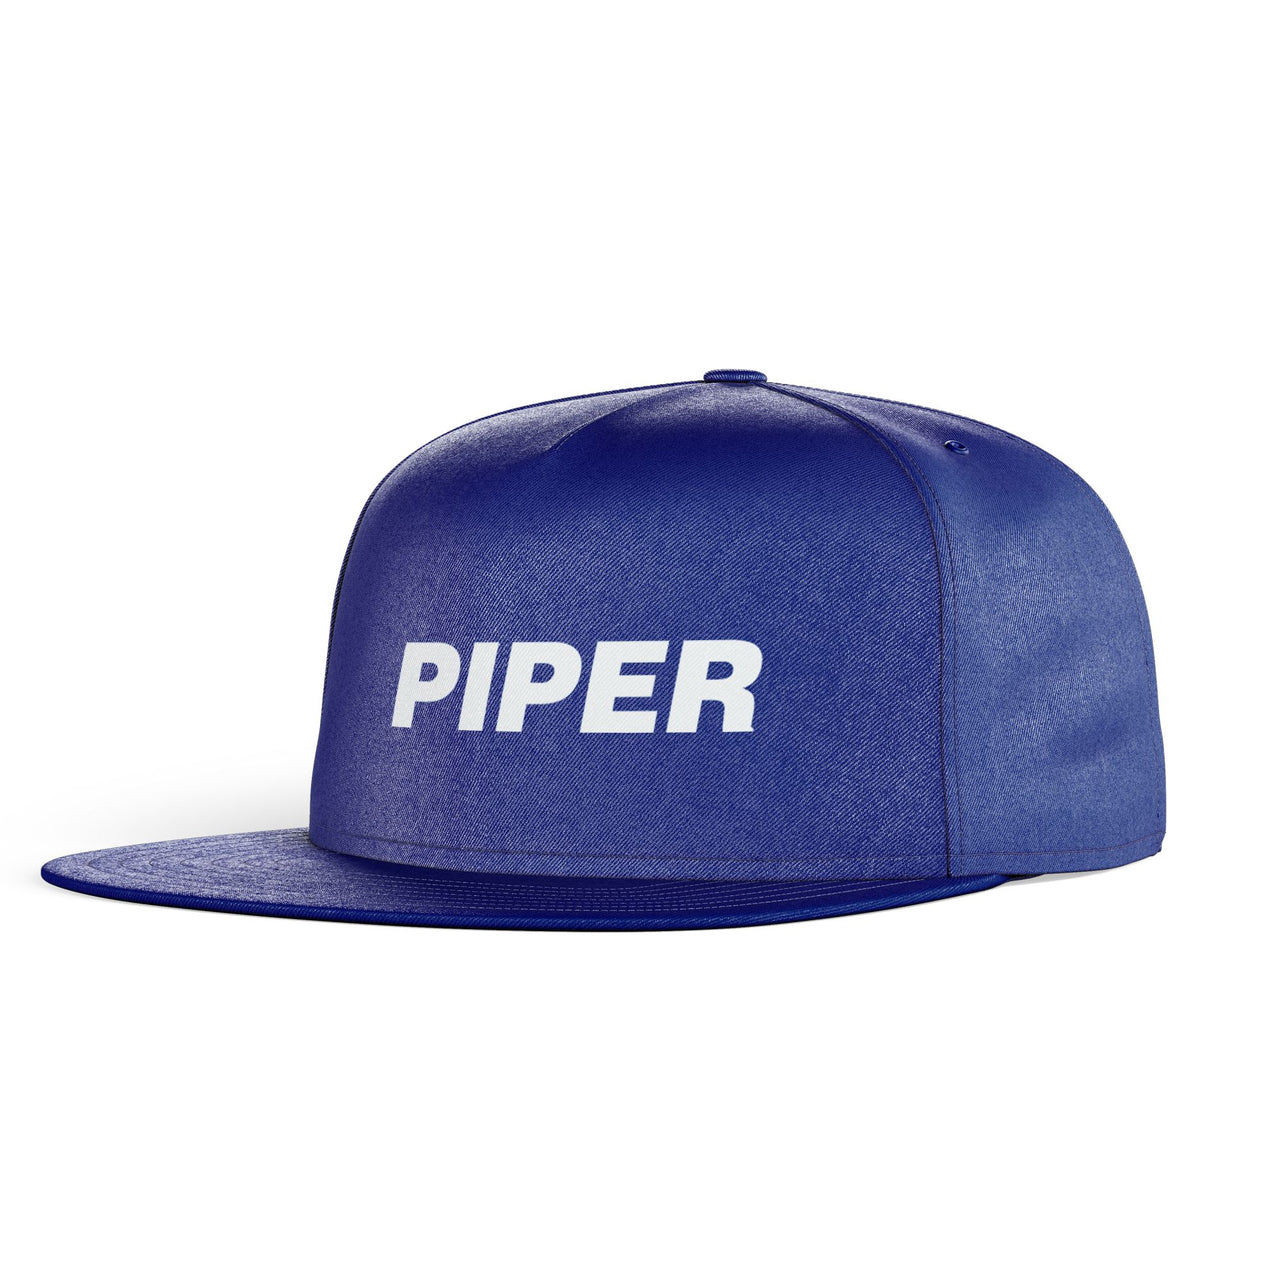 Piper & Text Designed Snapback Caps & Hats